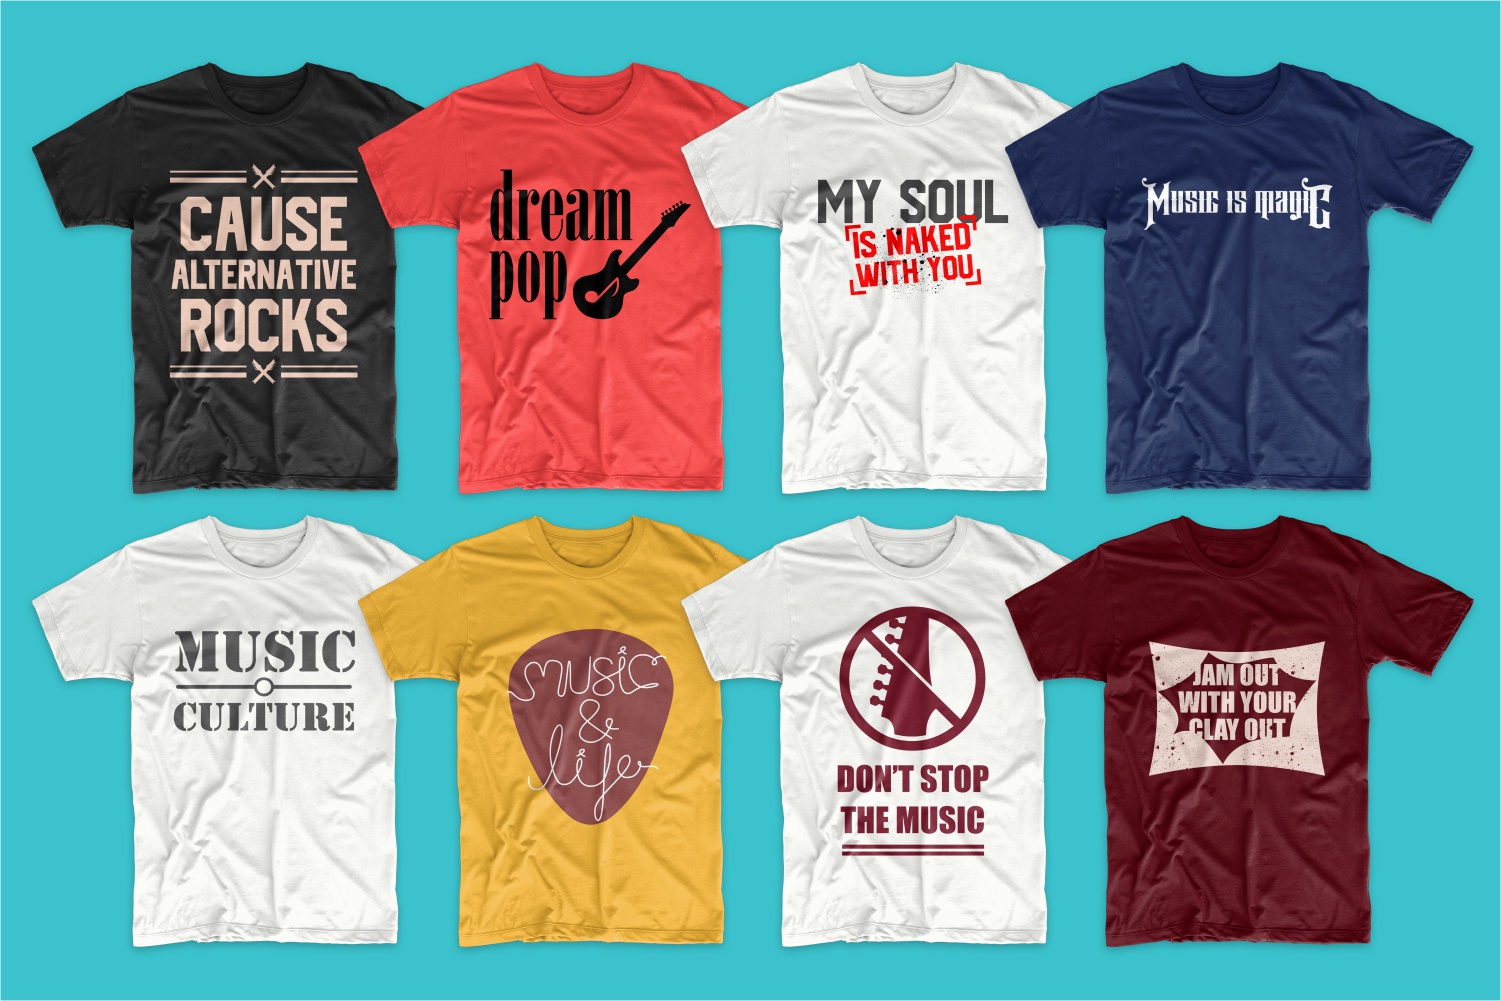 t-shirt-designs-bundle-music-slogans